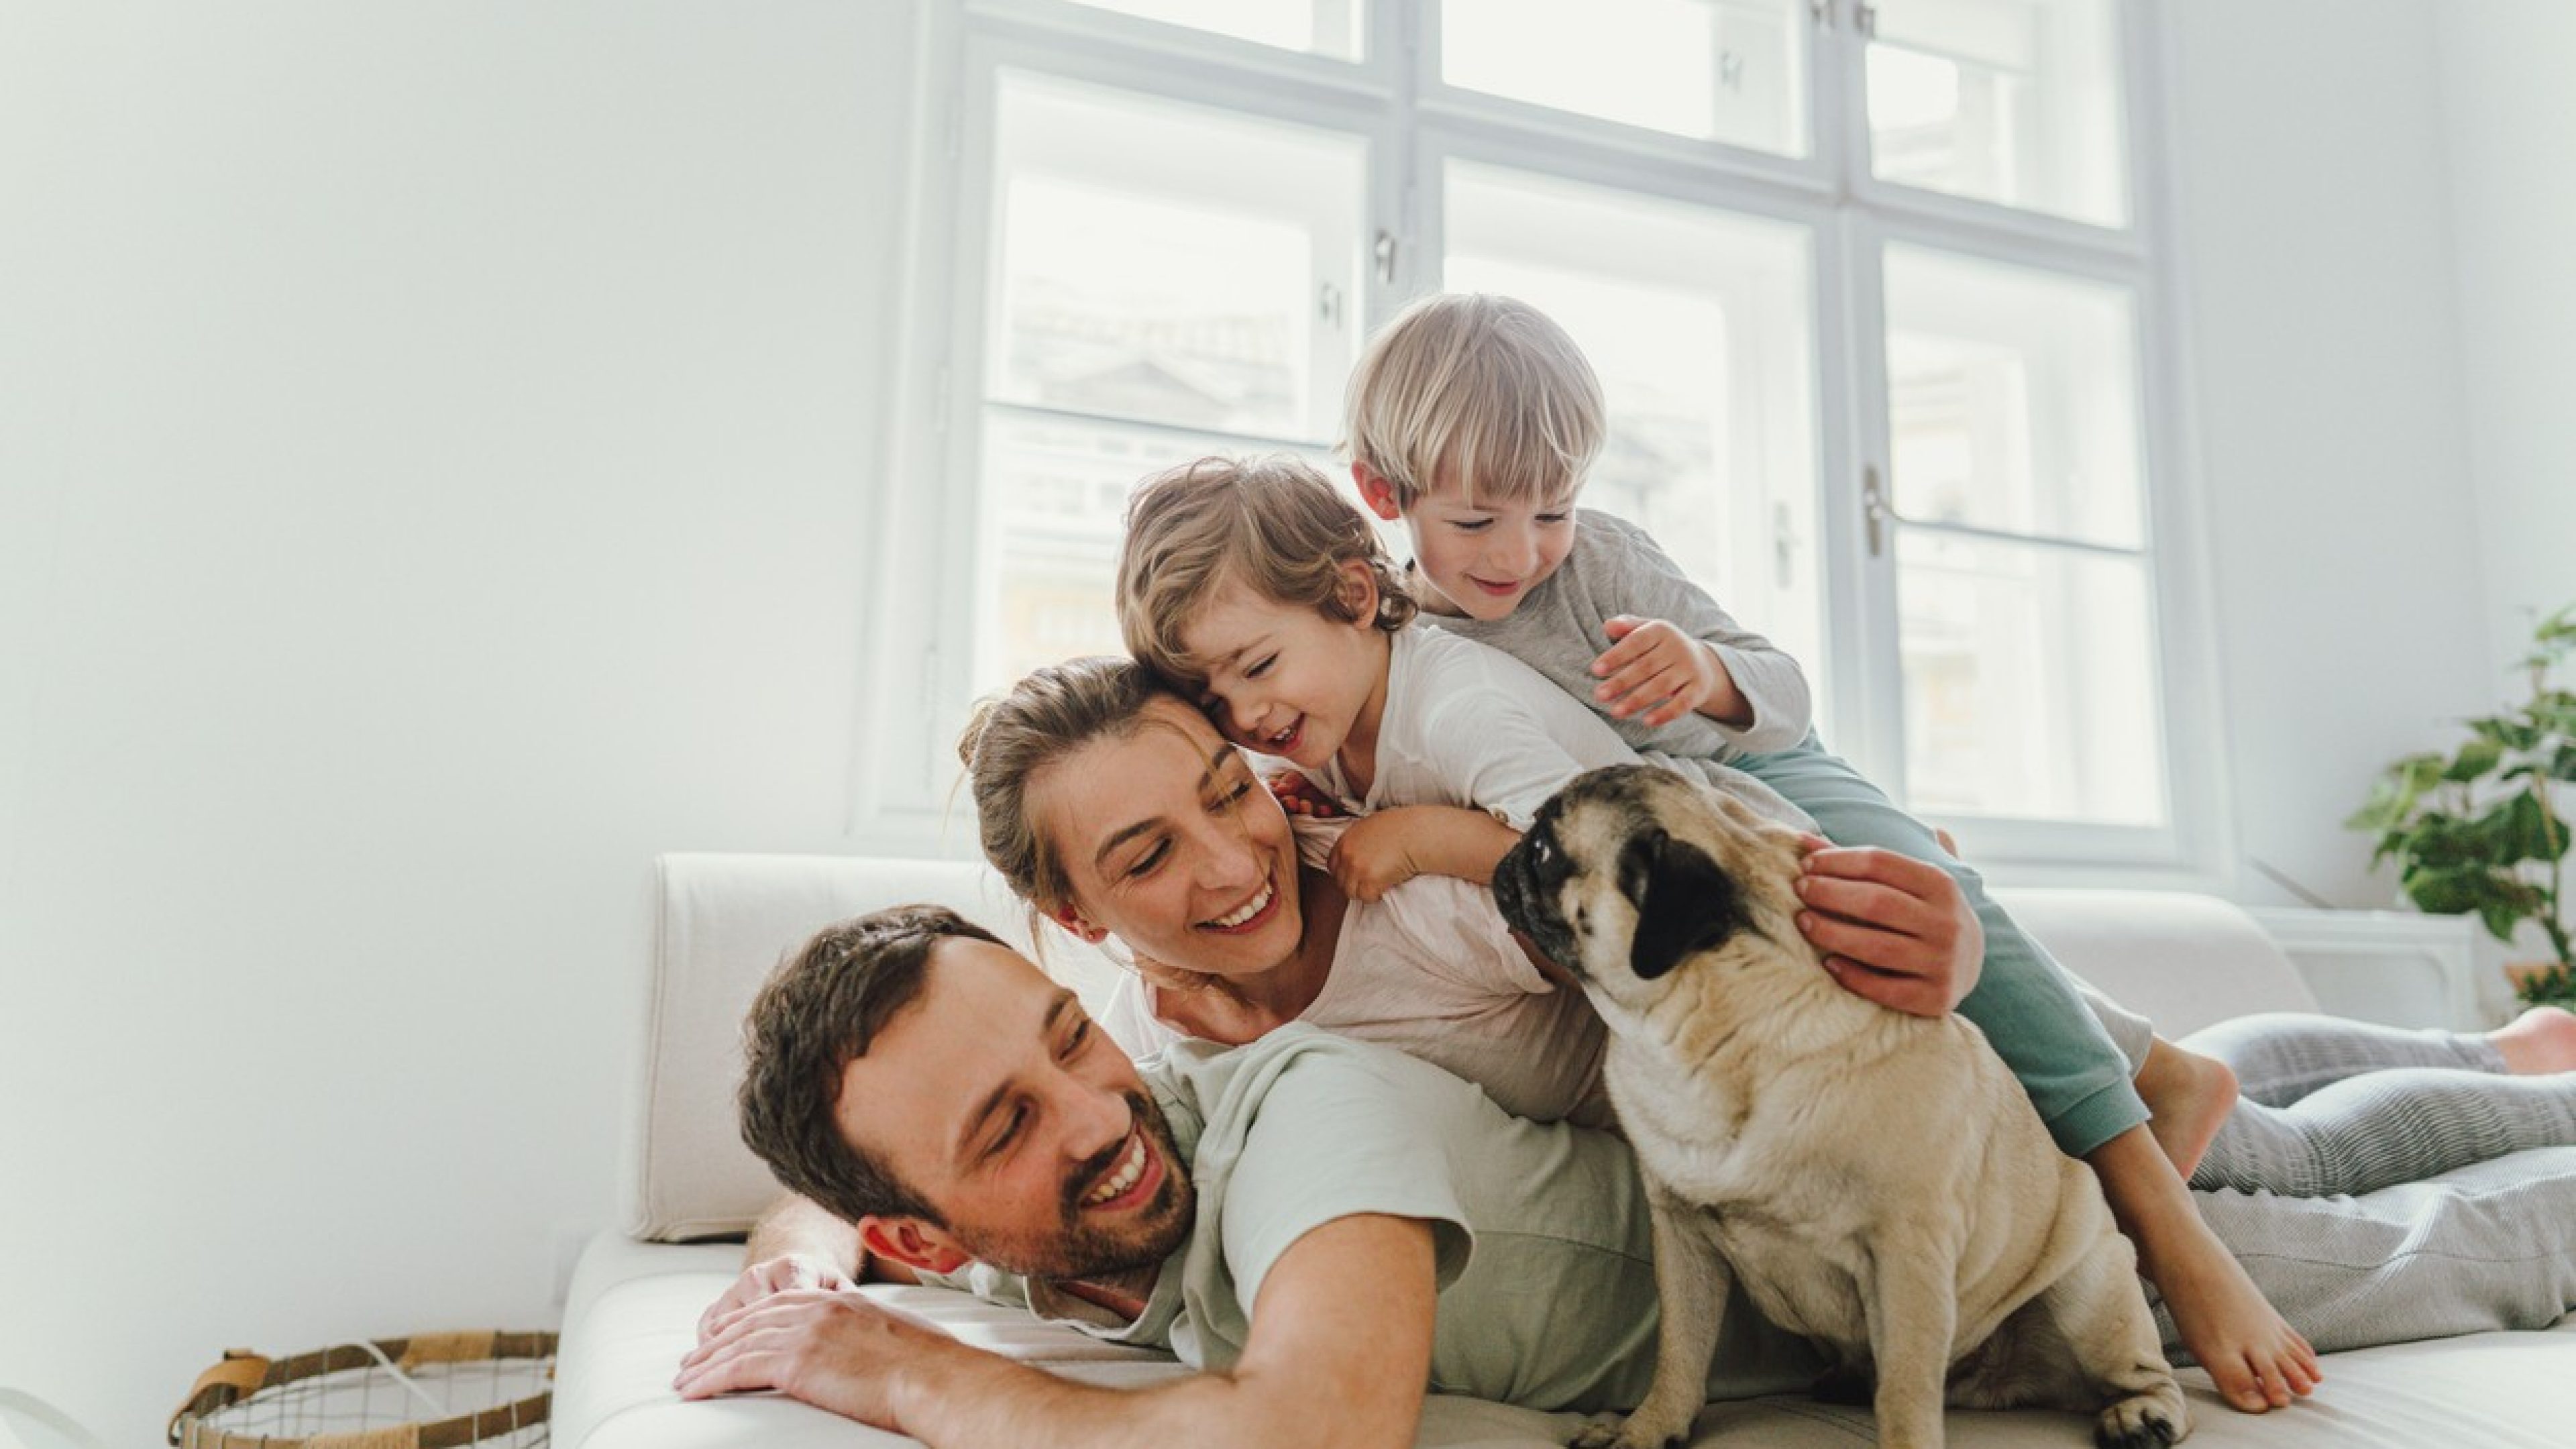 Padre, madre e figli accatastati sul divano, con accanto un cane